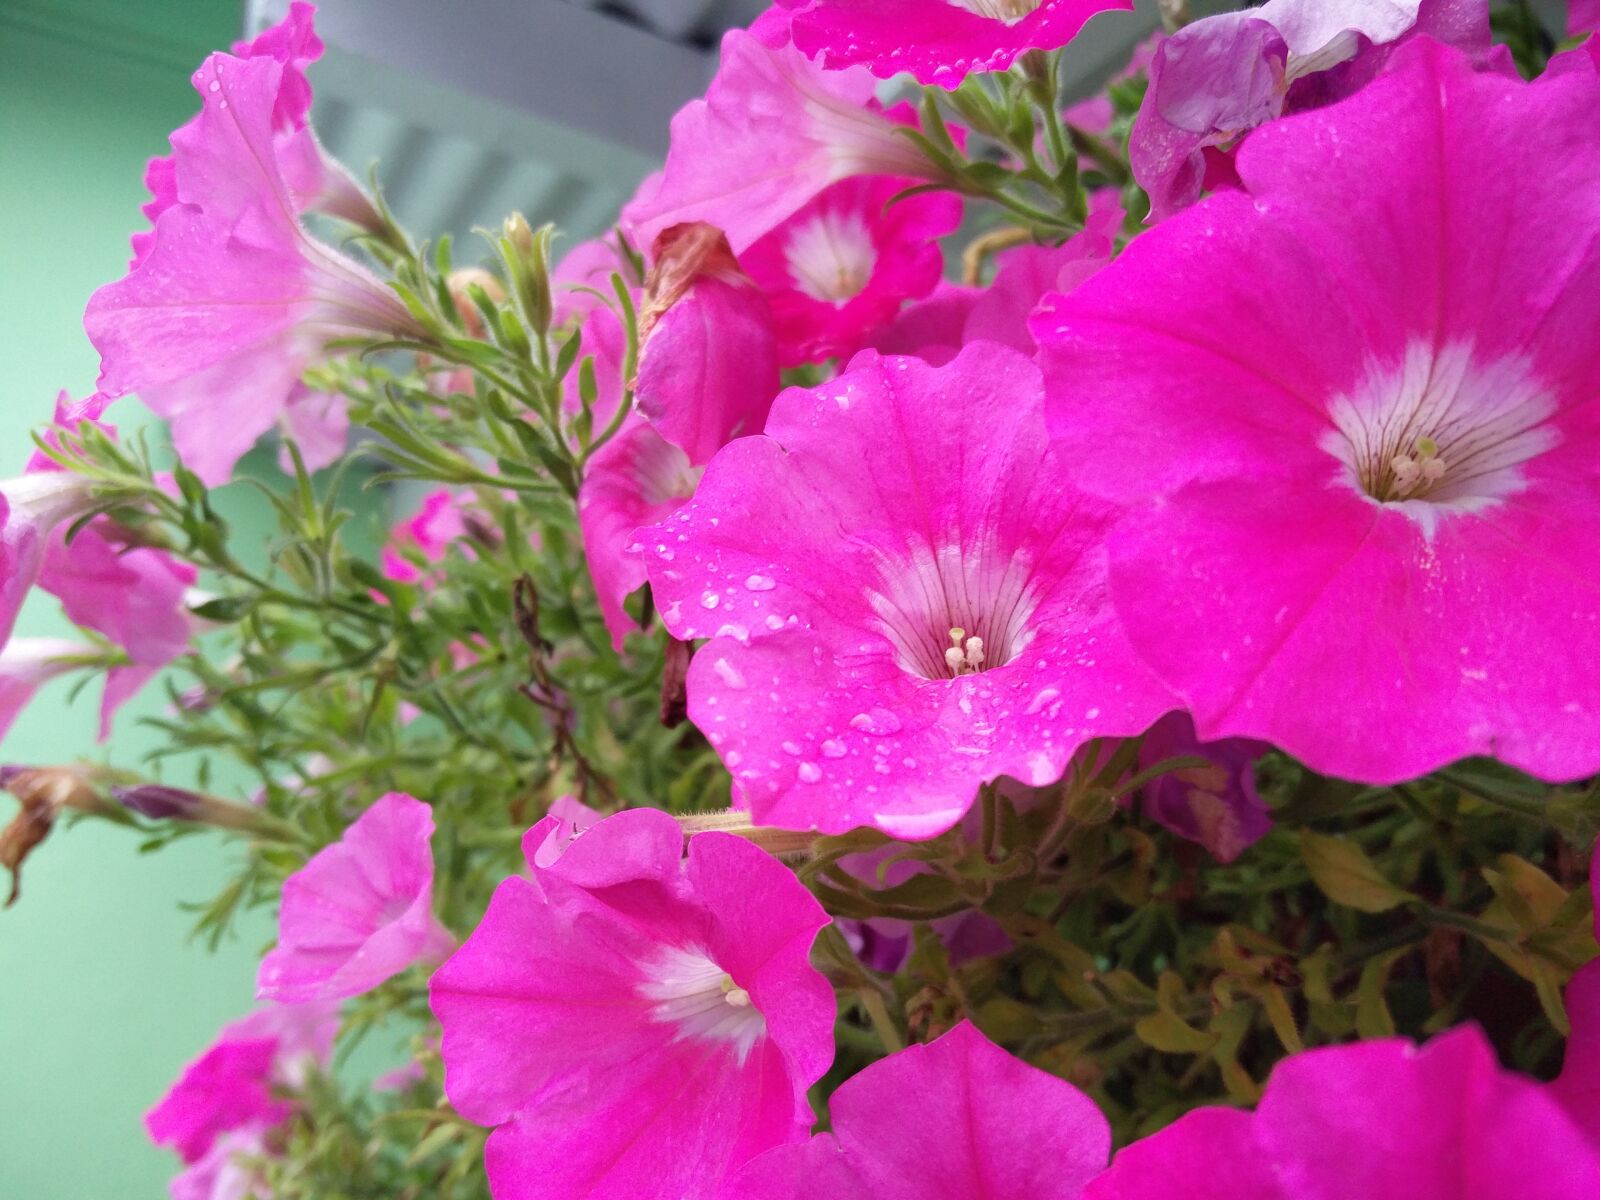 OnePlus 2 sample photo. Pink flower, garden, dew photography